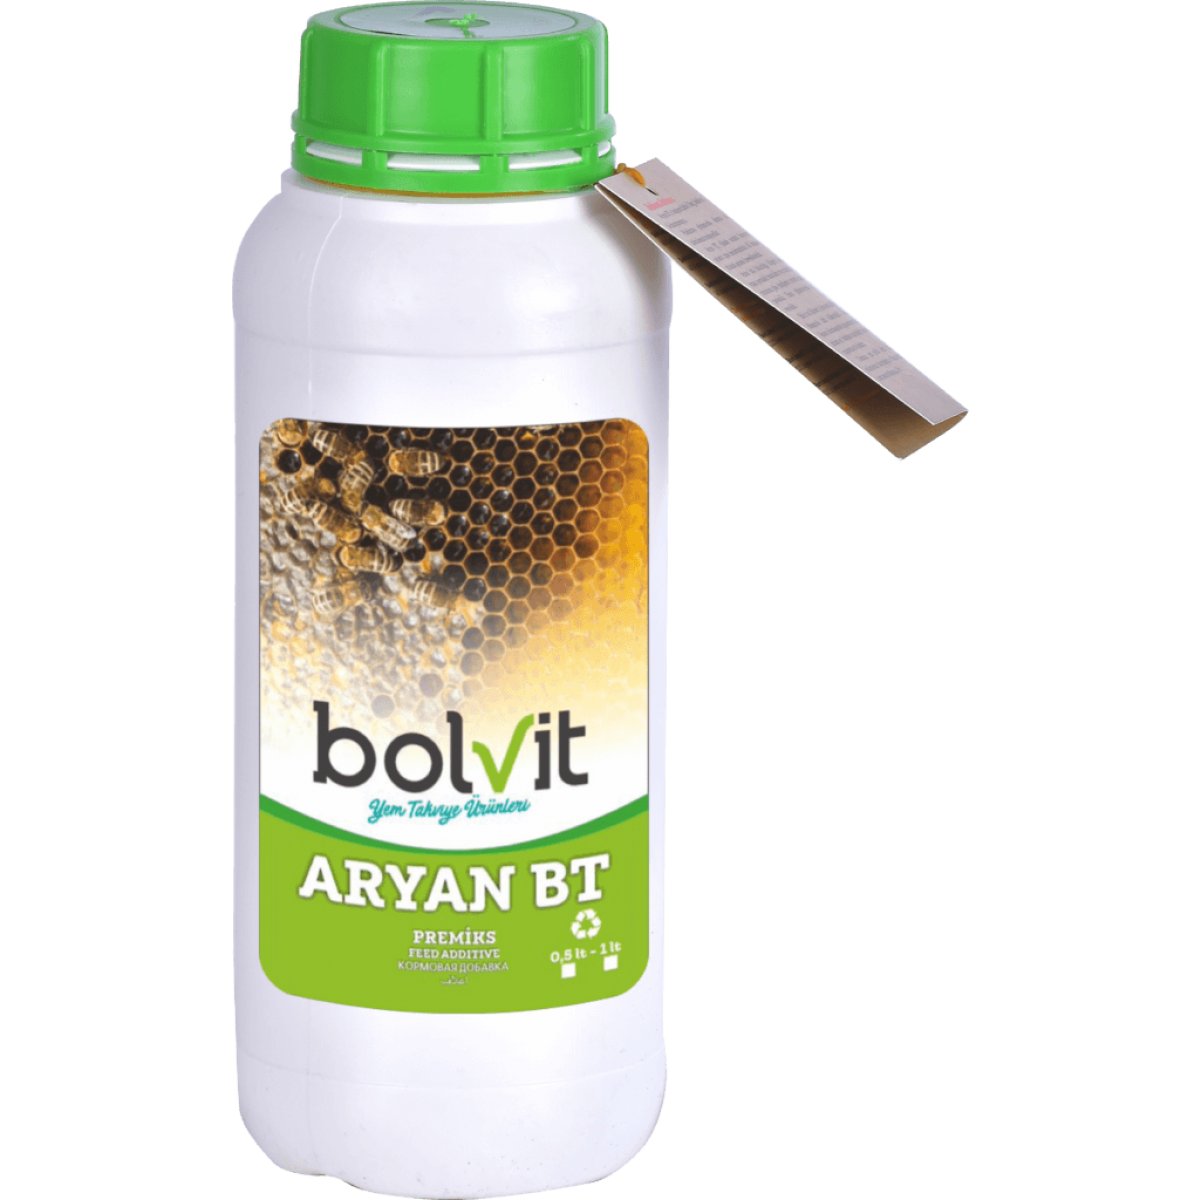 Bolvit Aryan BT